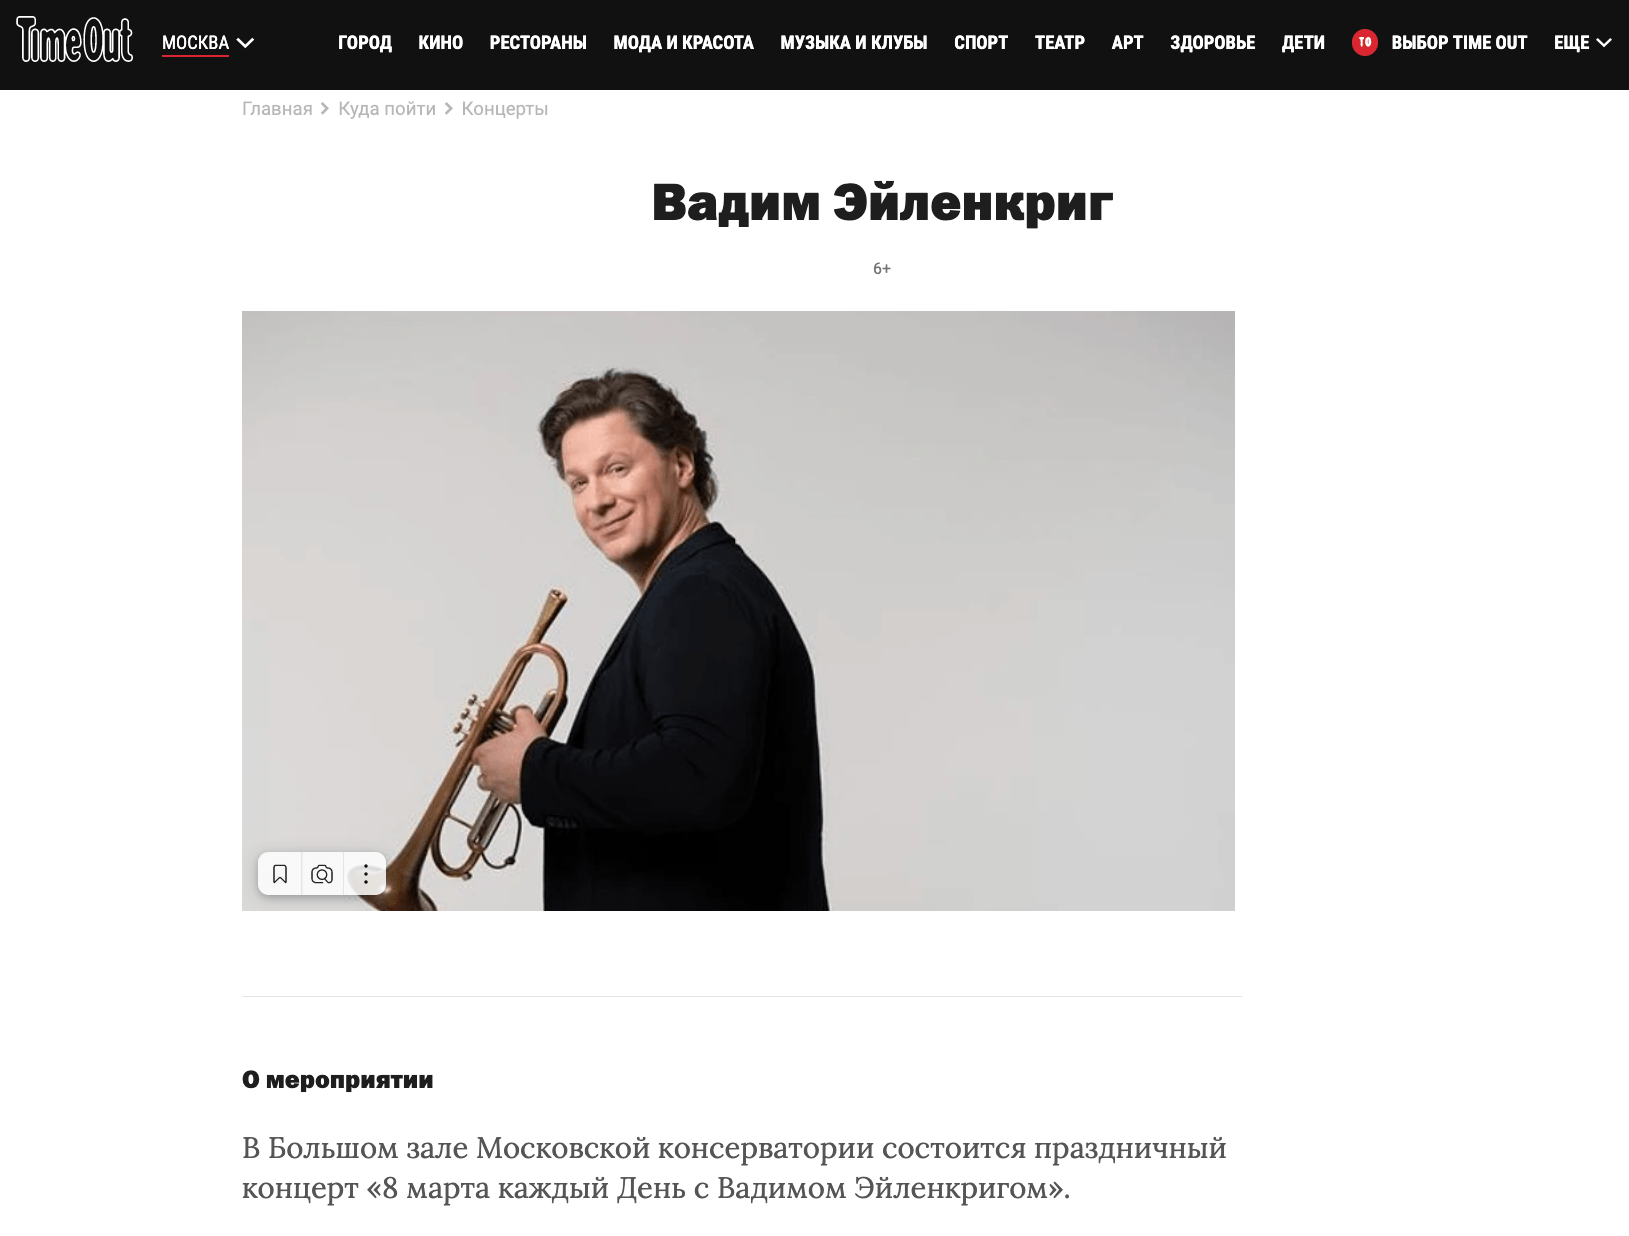 В Большом зале Московской консерватории состоится праздничный концерт «8 марта каждый День с Вадимом Эйленкригом».